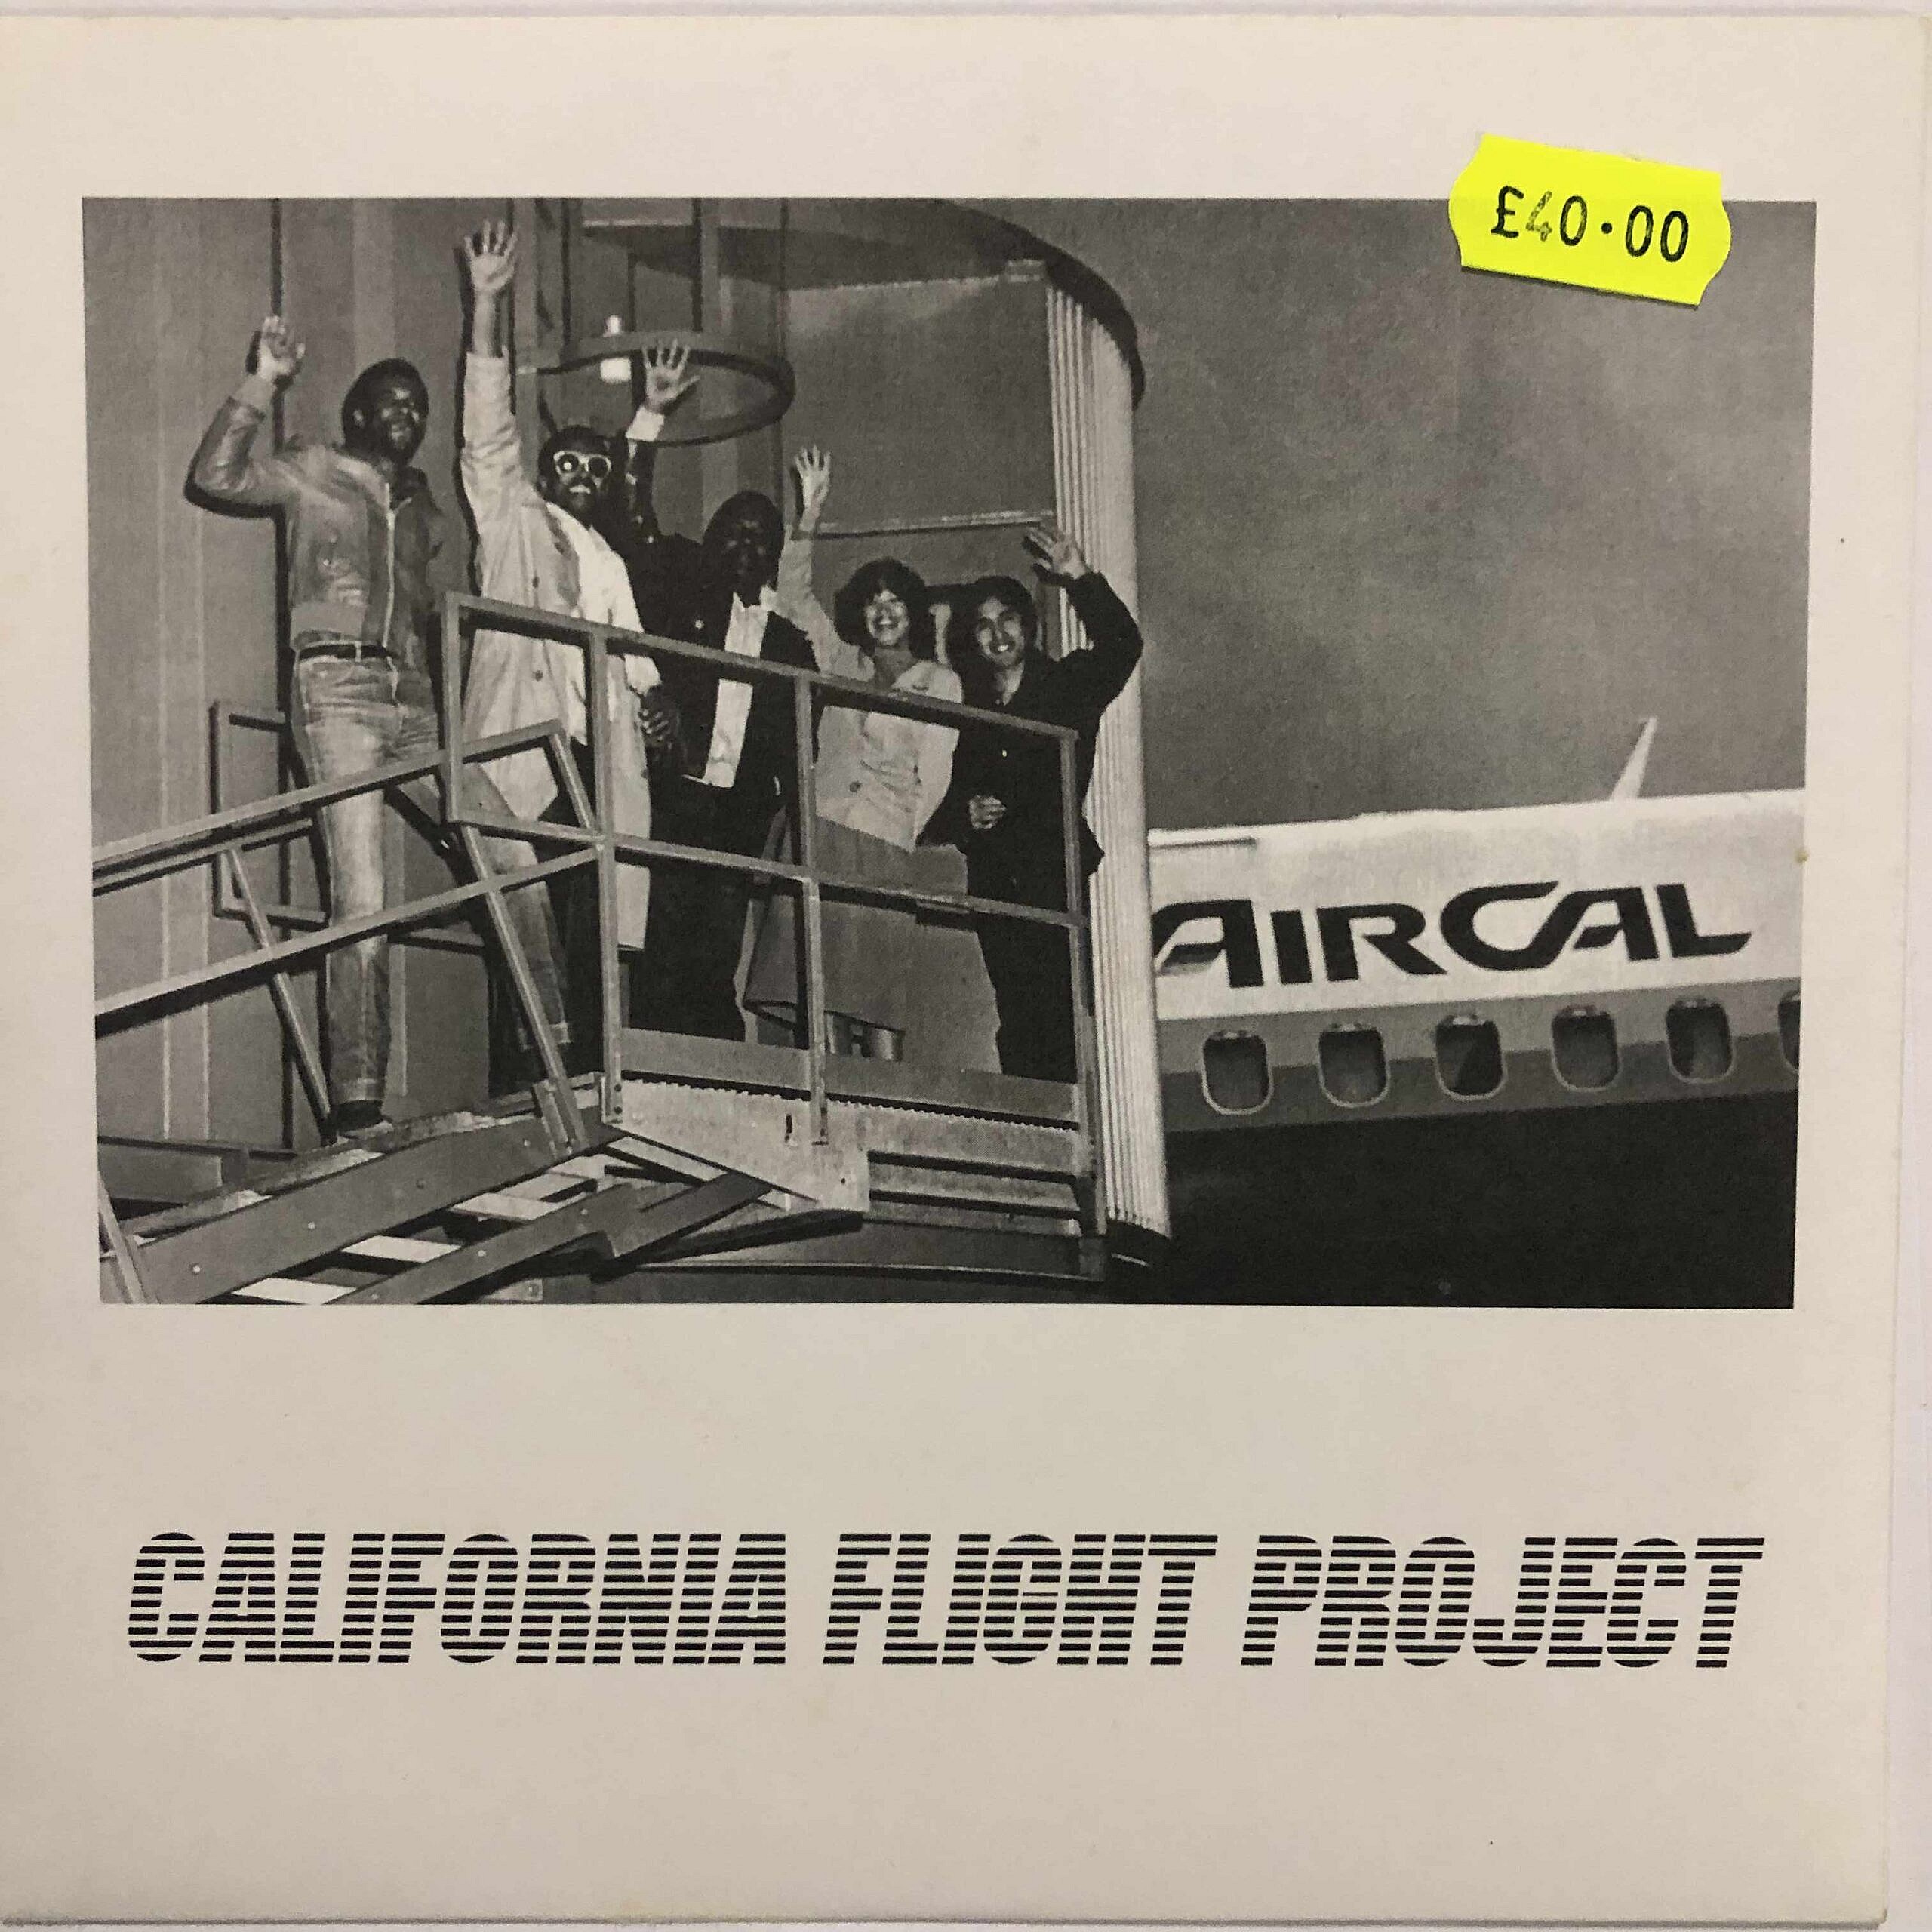 California Flight